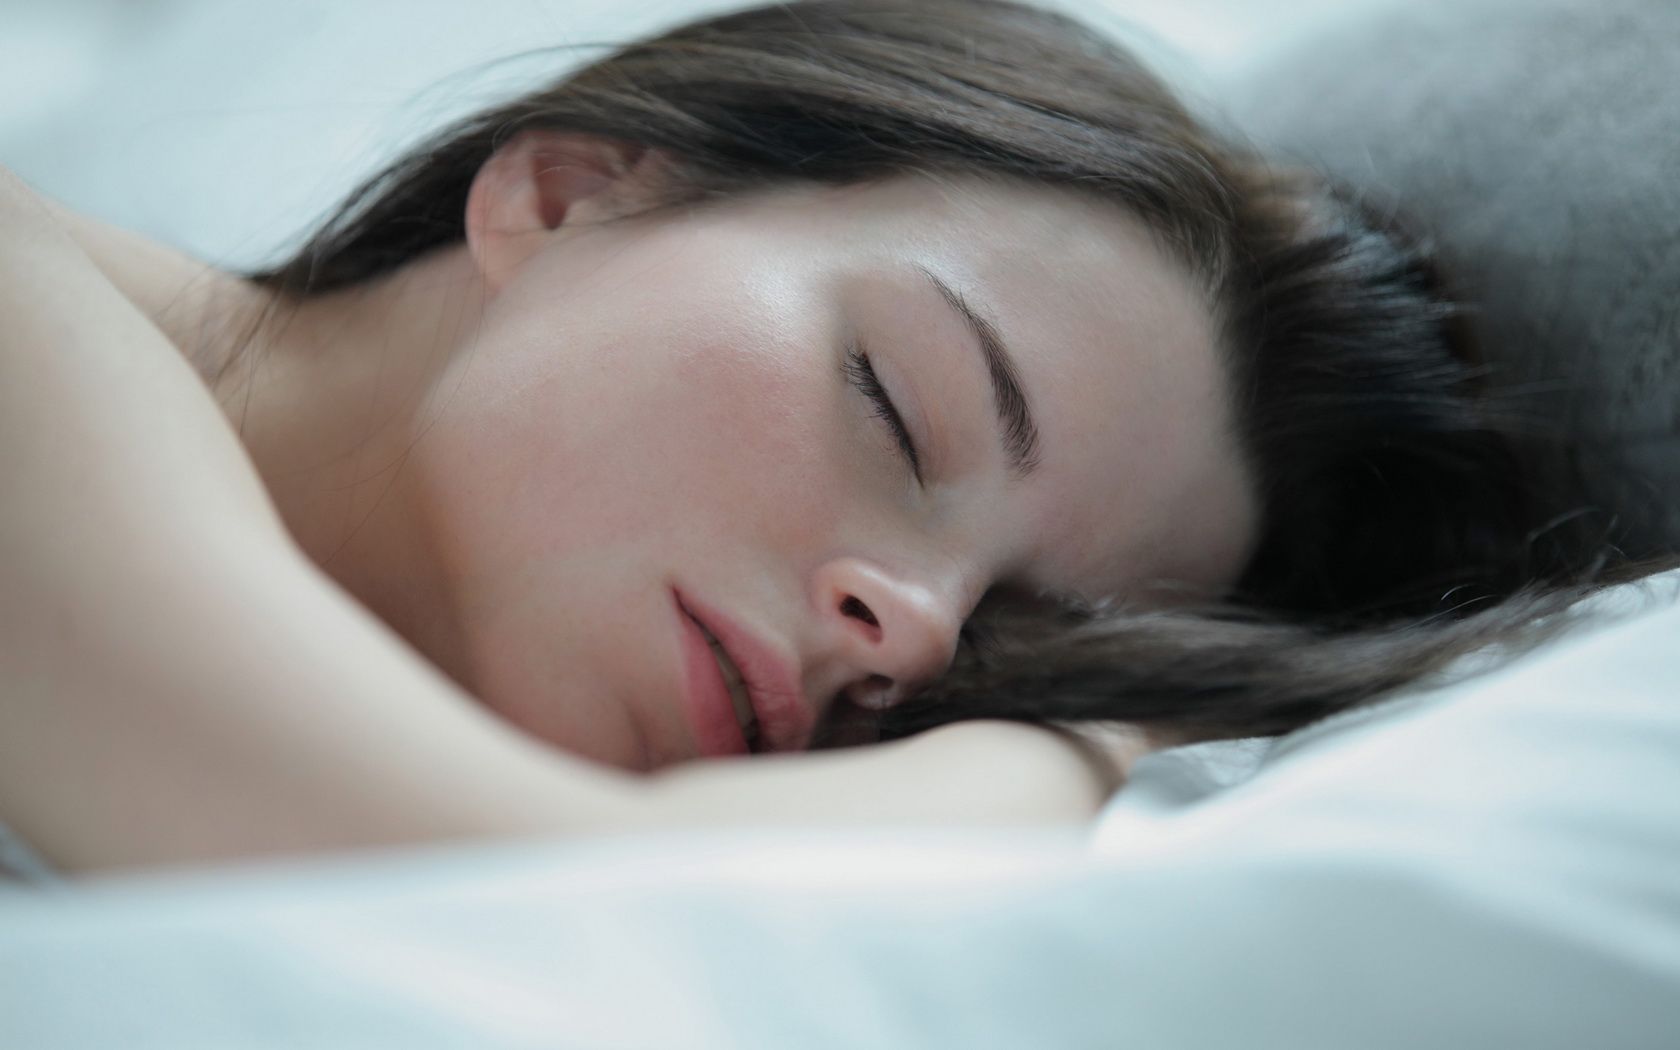 Woman Gril Beauty Face Brunette Sleeping Pillow Jessica wallpaperx1050